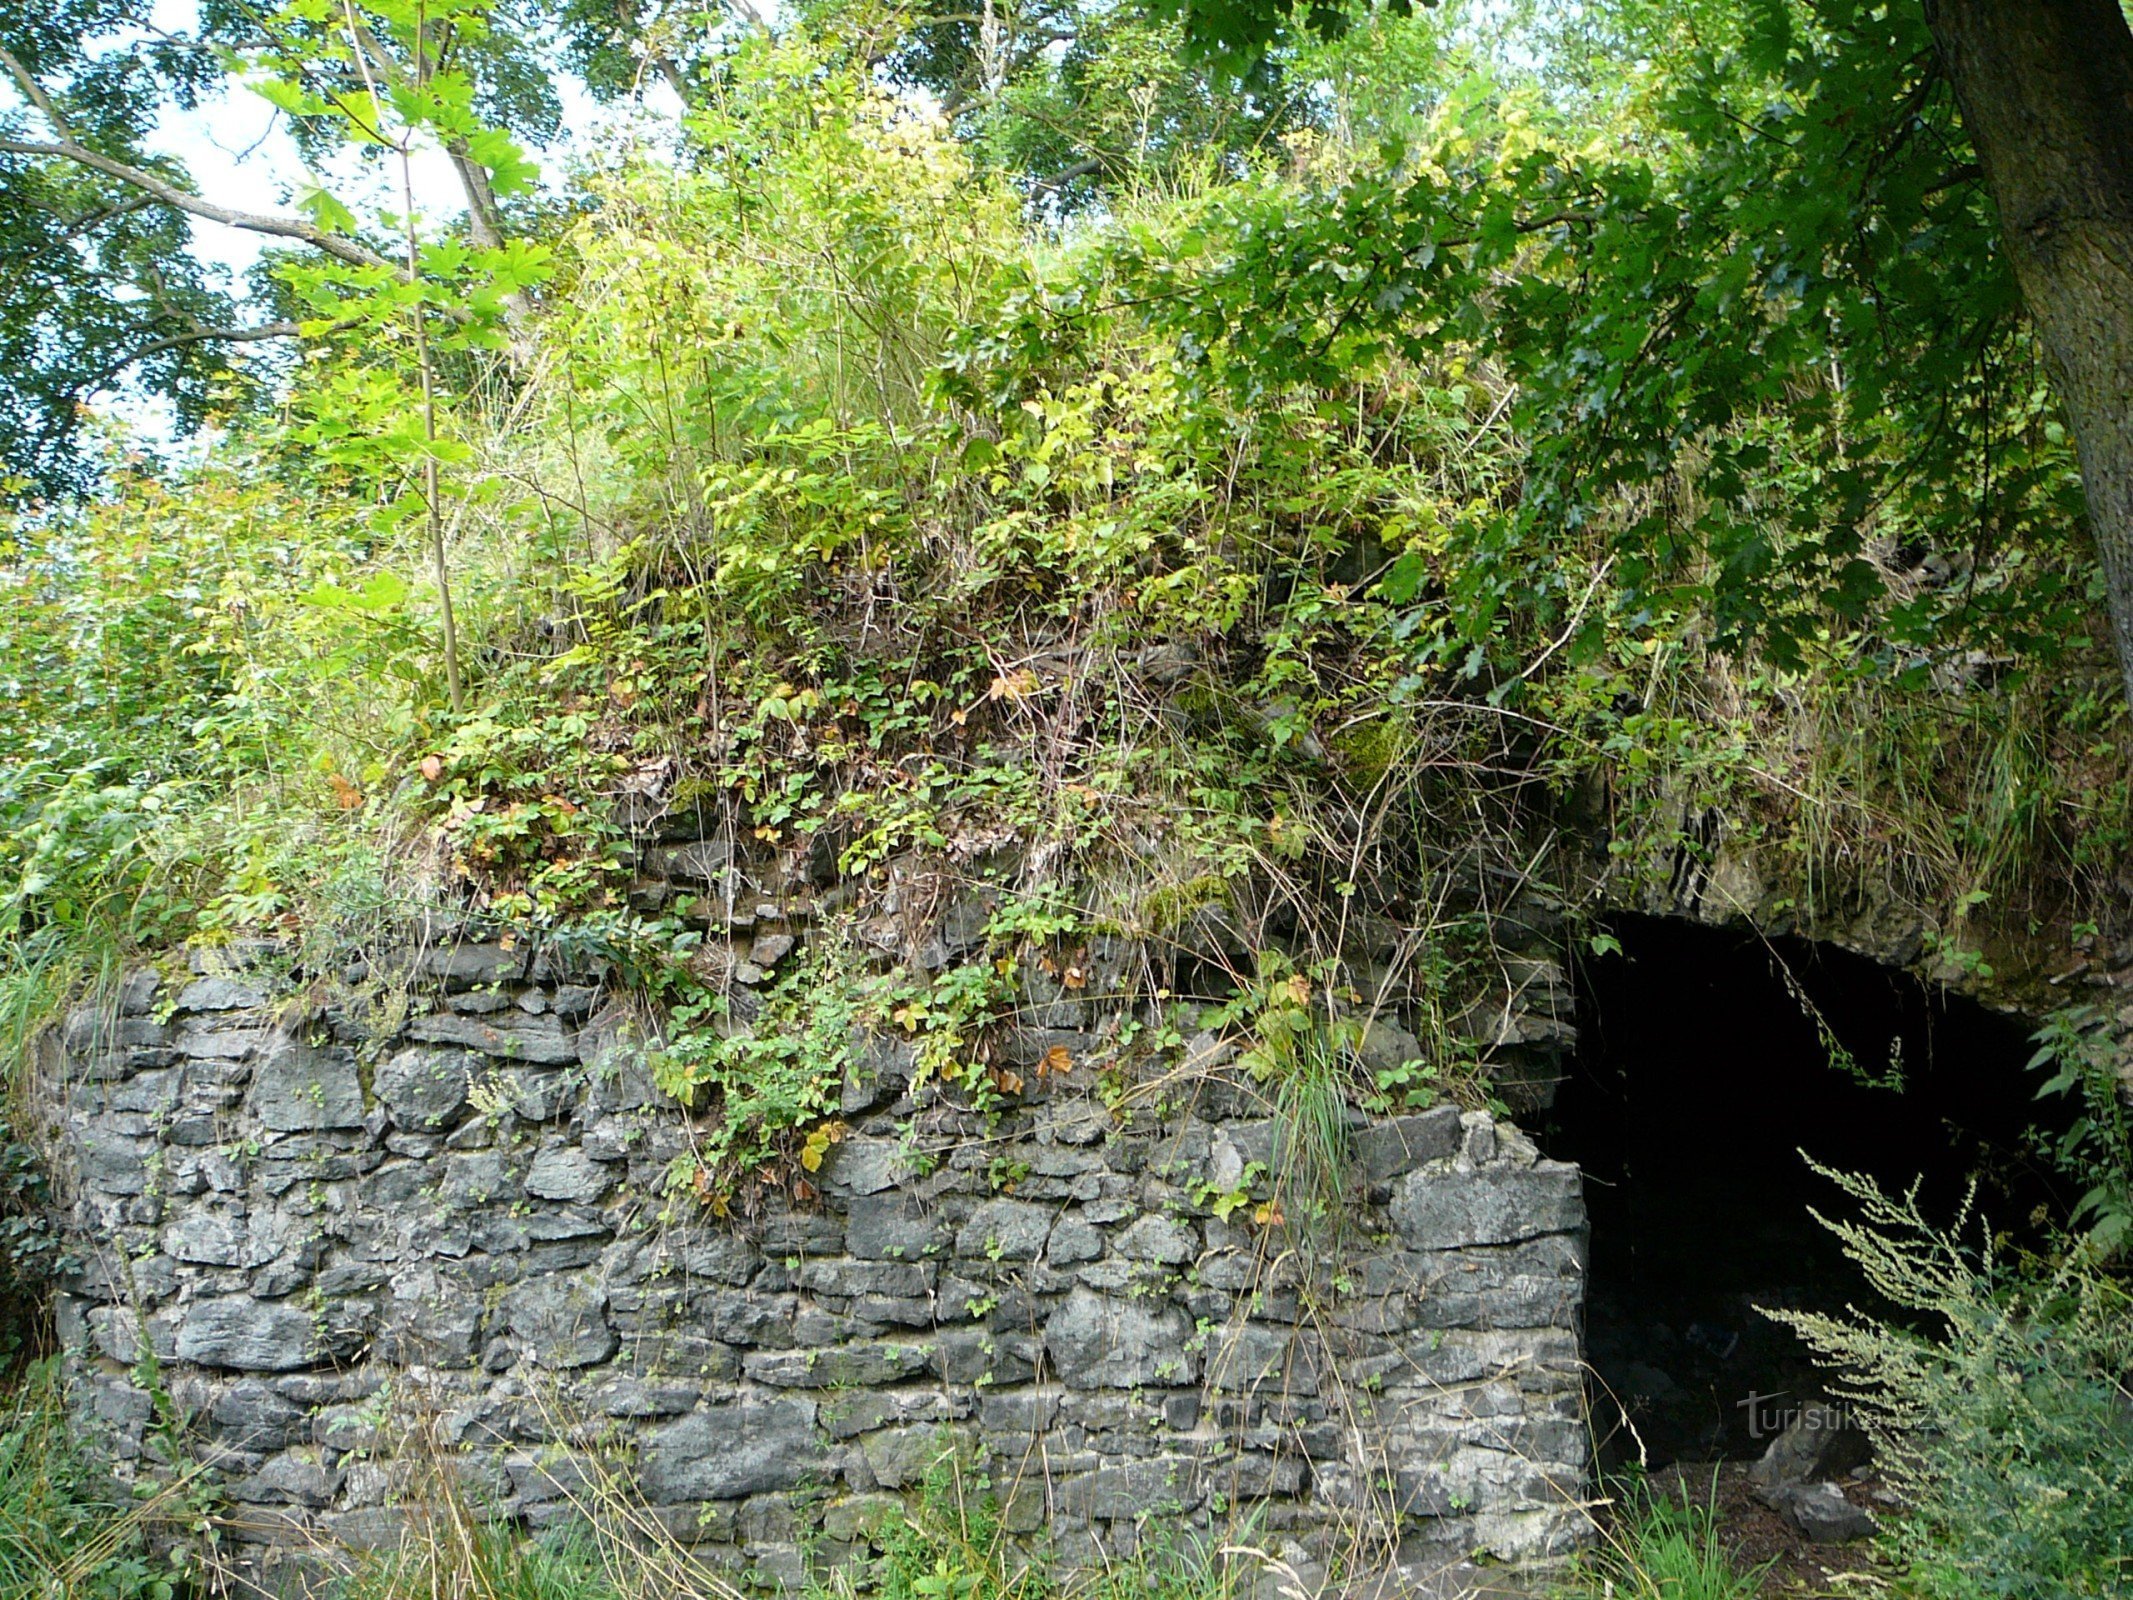 Góc của donjon với lối vào hầm mái vòm